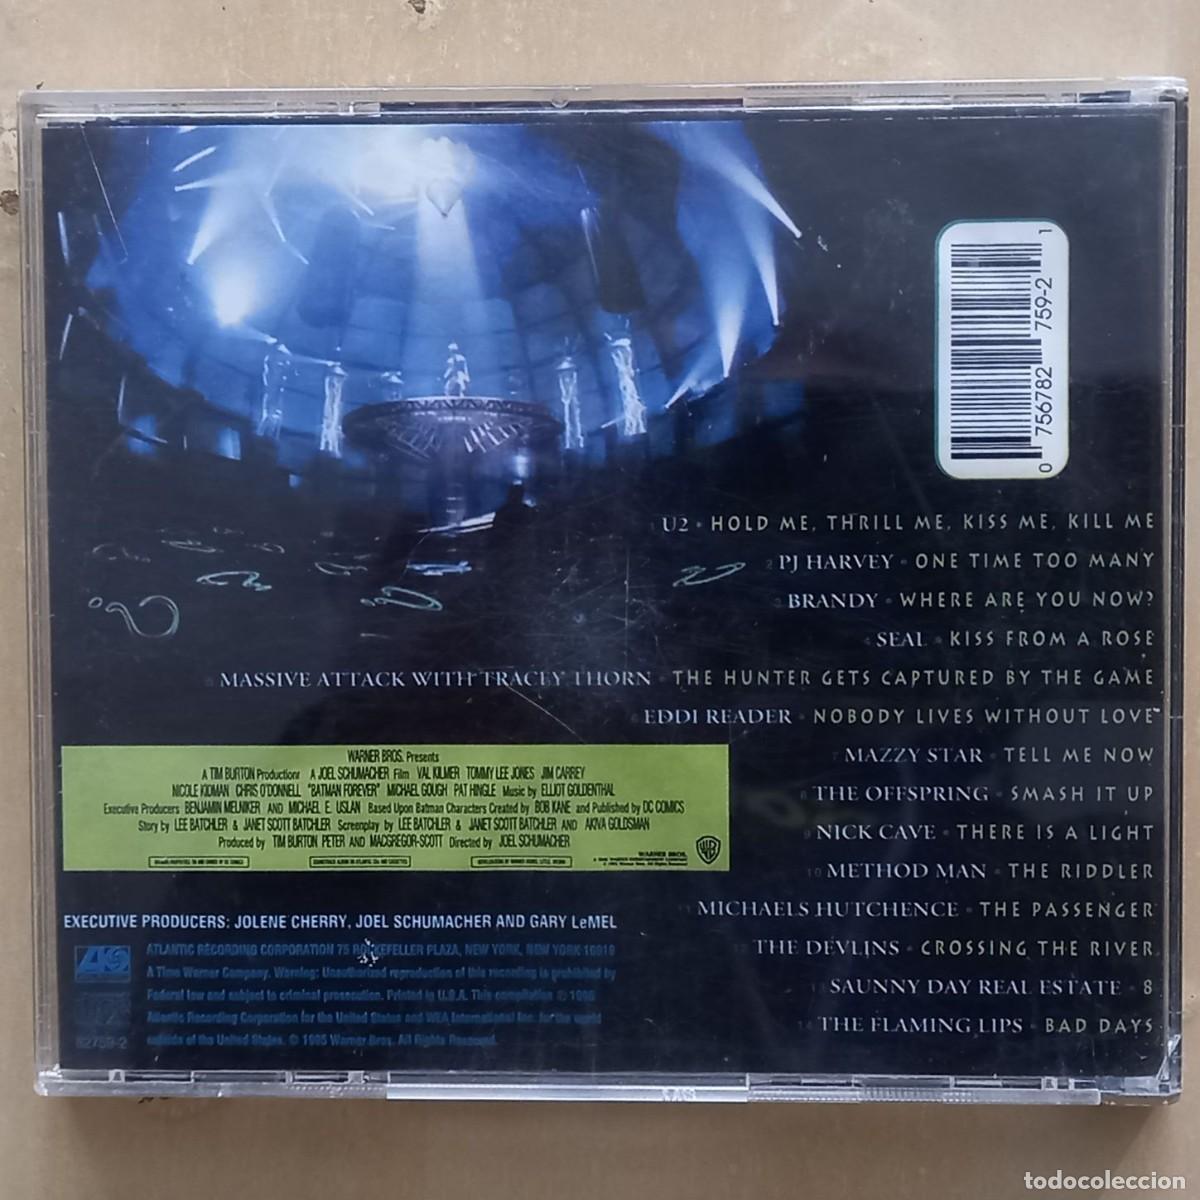 batman forever banda sonora original - Buy CD's of Soundtracks on  todocoleccion